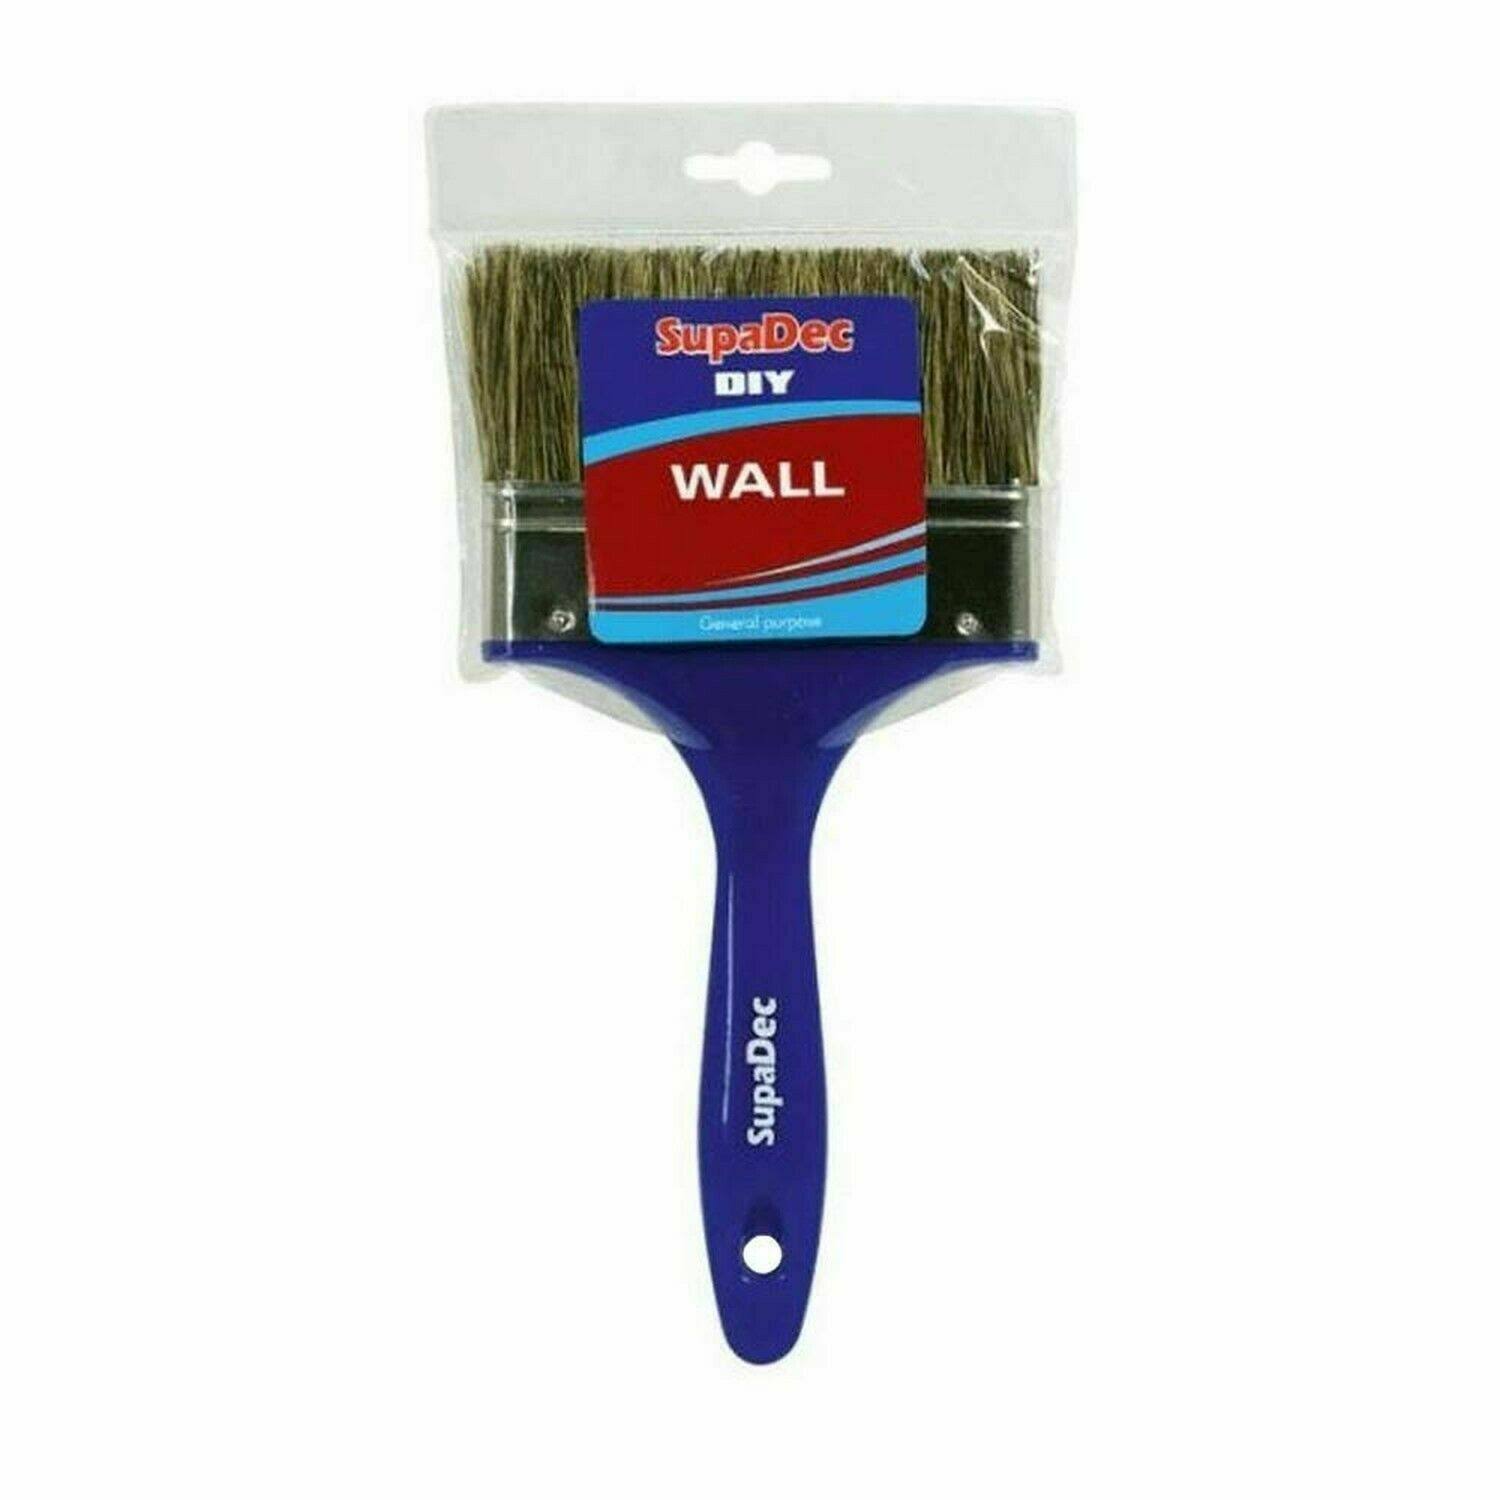 SupaDec DIY Wall Brush - 6inch -150mm